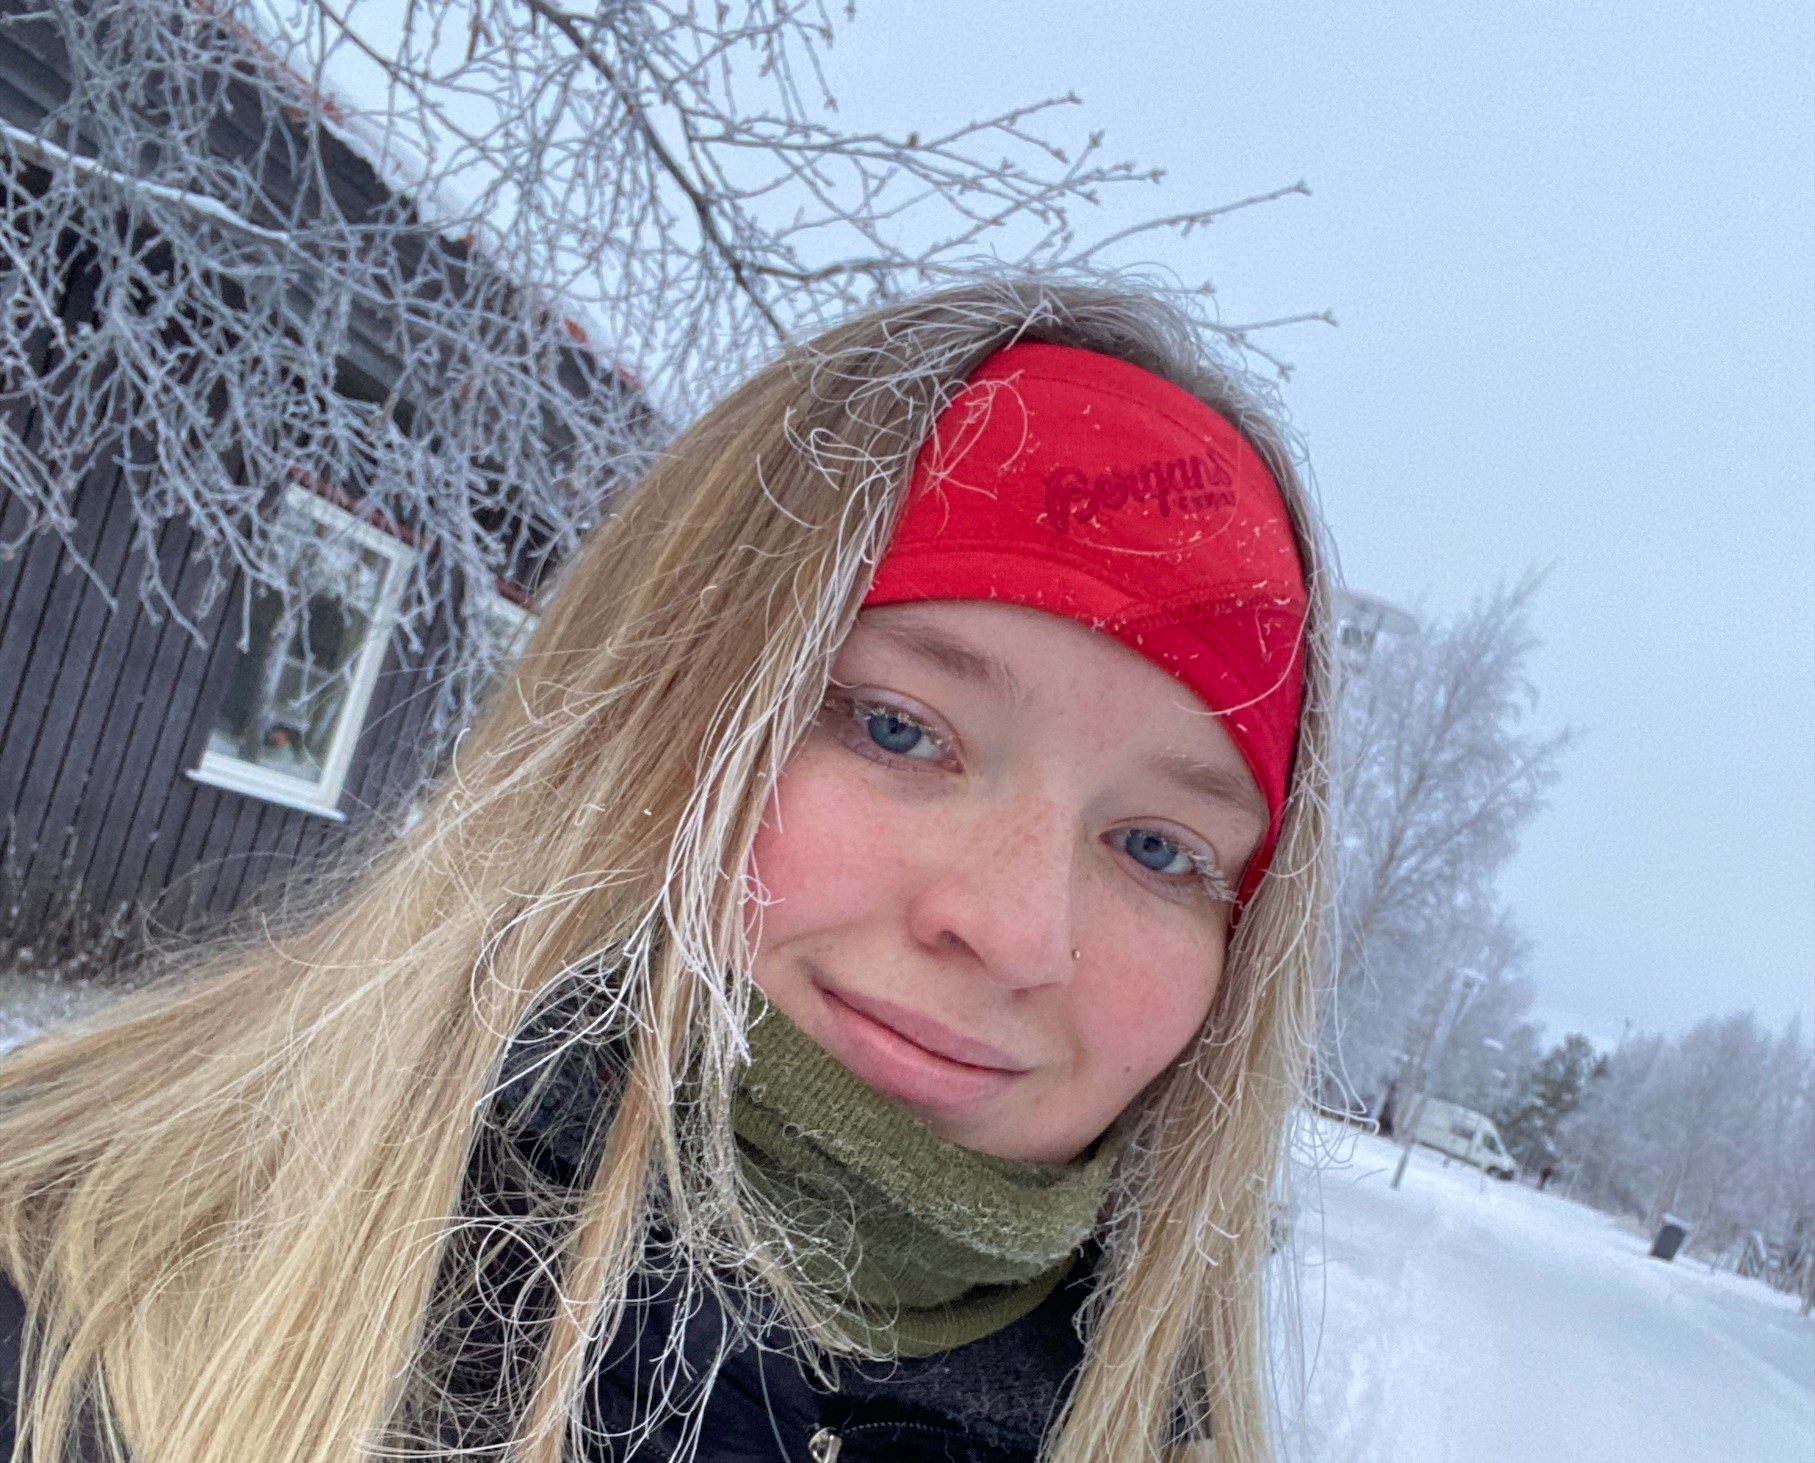 ung kvinne med langt, lyst hår og rødt pannebånd i vinterlig, hvitt landskap. Hun har snø i håret og frost på øyevippene.